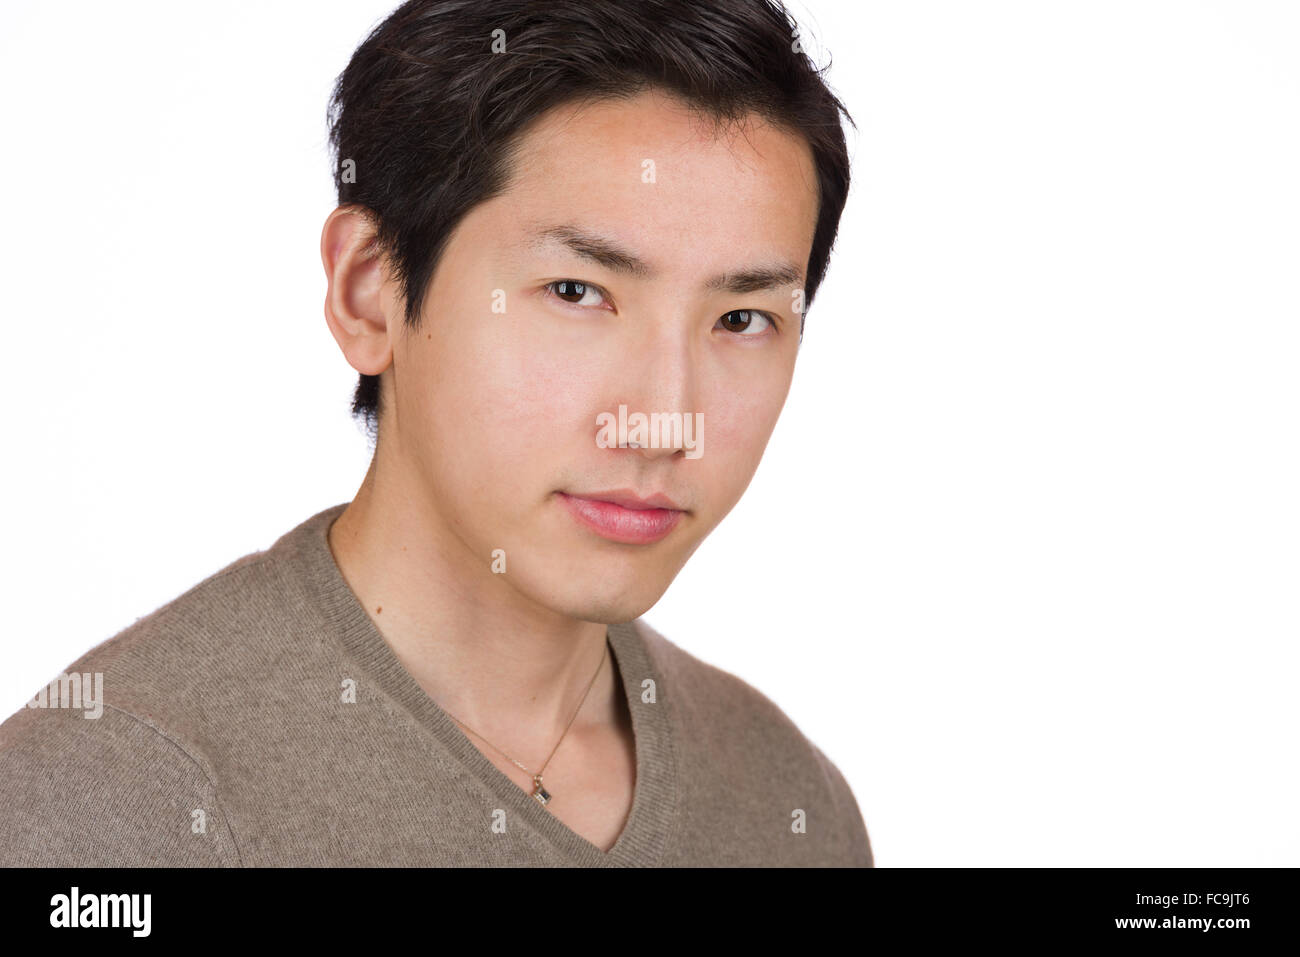 Ein Kopfschuss von einem schönen jungen japanischen Mann. Stockfoto